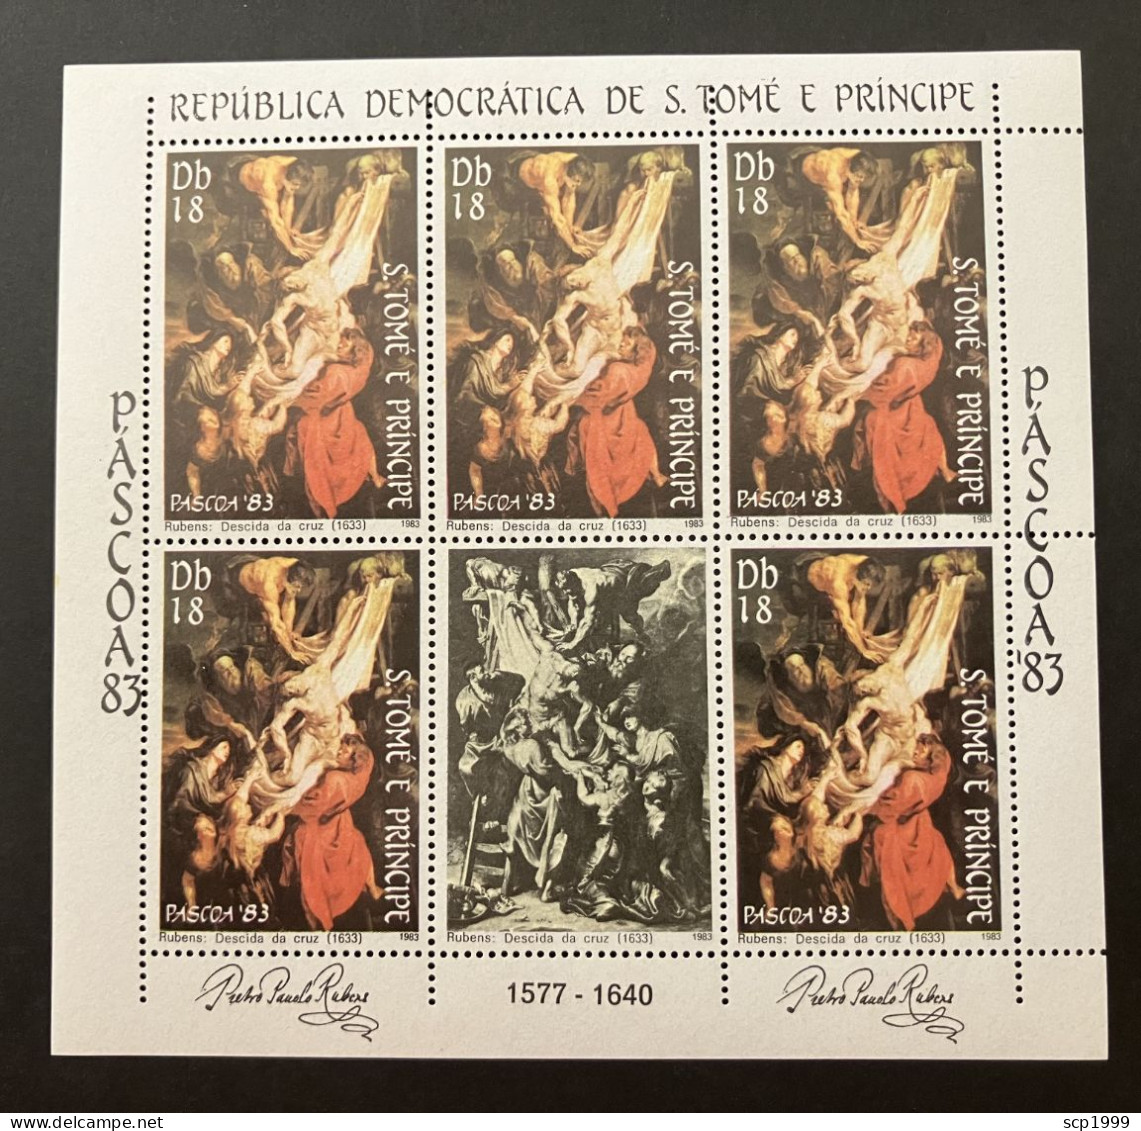 São Tomé & Príncipe 1983 - P. P. Rubens, Descent From The Cross Mini-sheet MNH - Sao Tome Et Principe